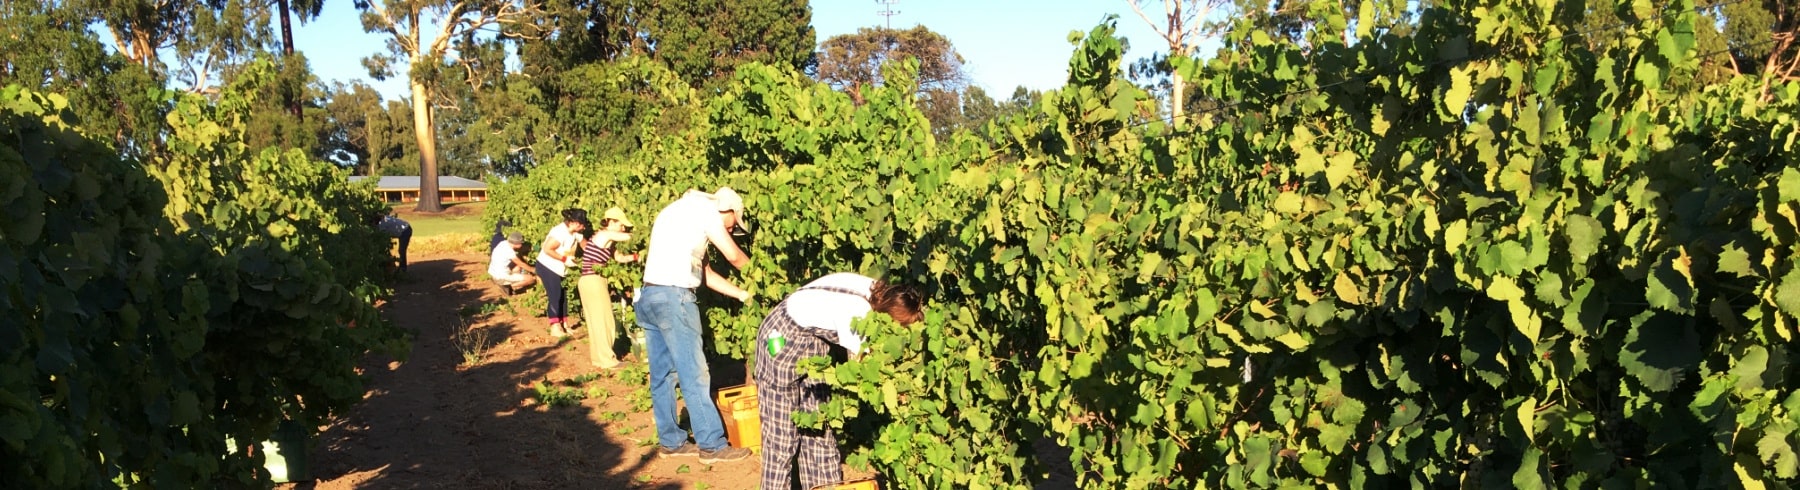 Organic grape picking